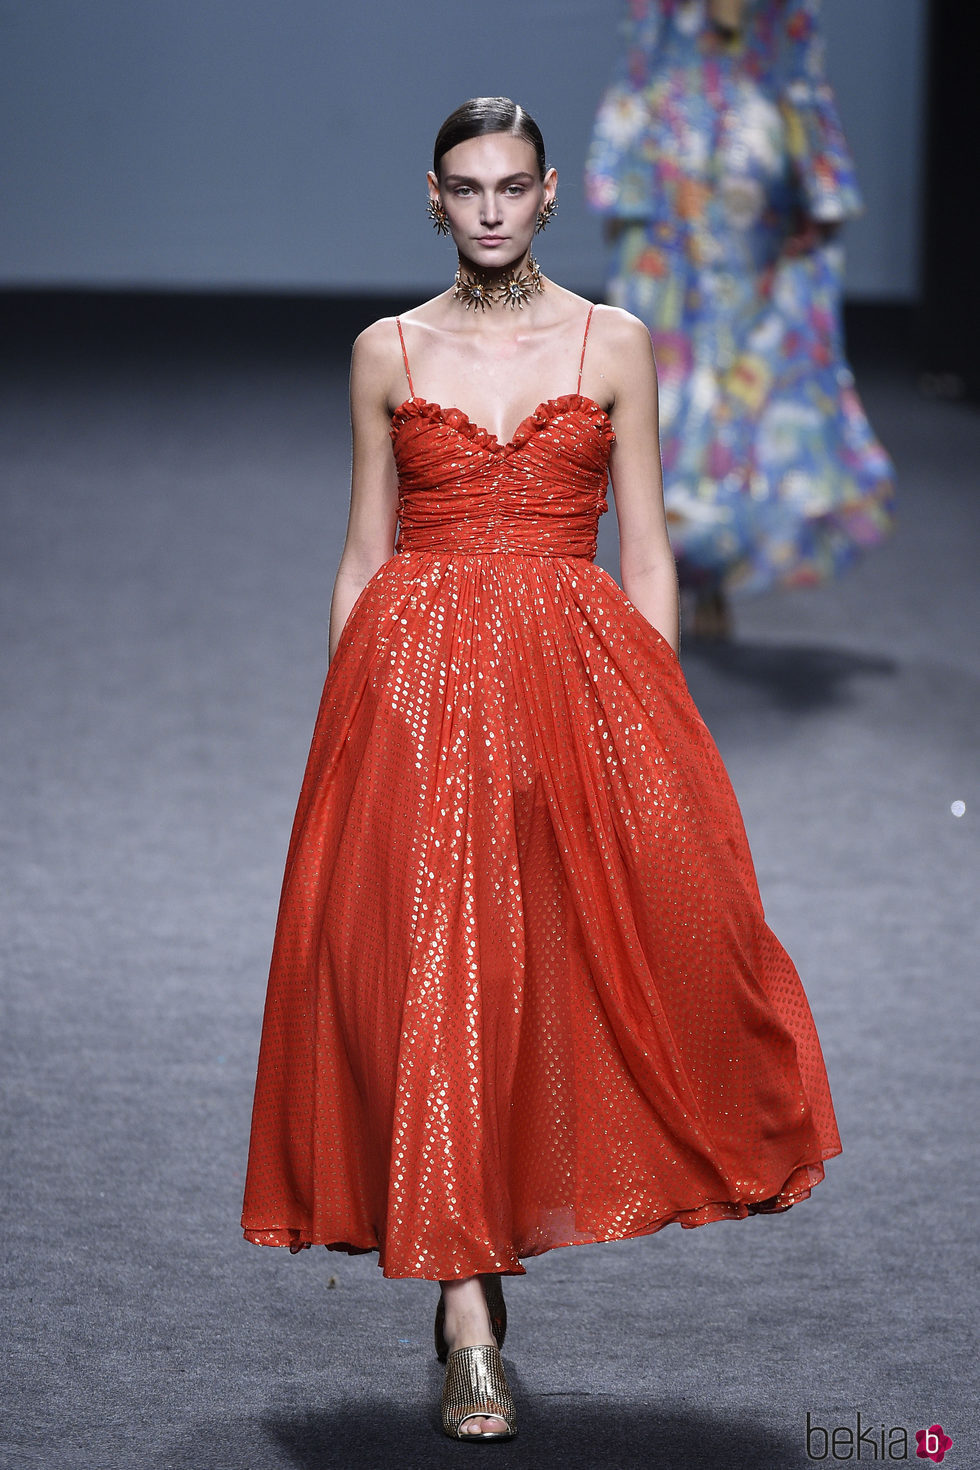 Vestido rojo de tirantes de María Escoté primavera/verano 2018 para Madrid Fashion Week